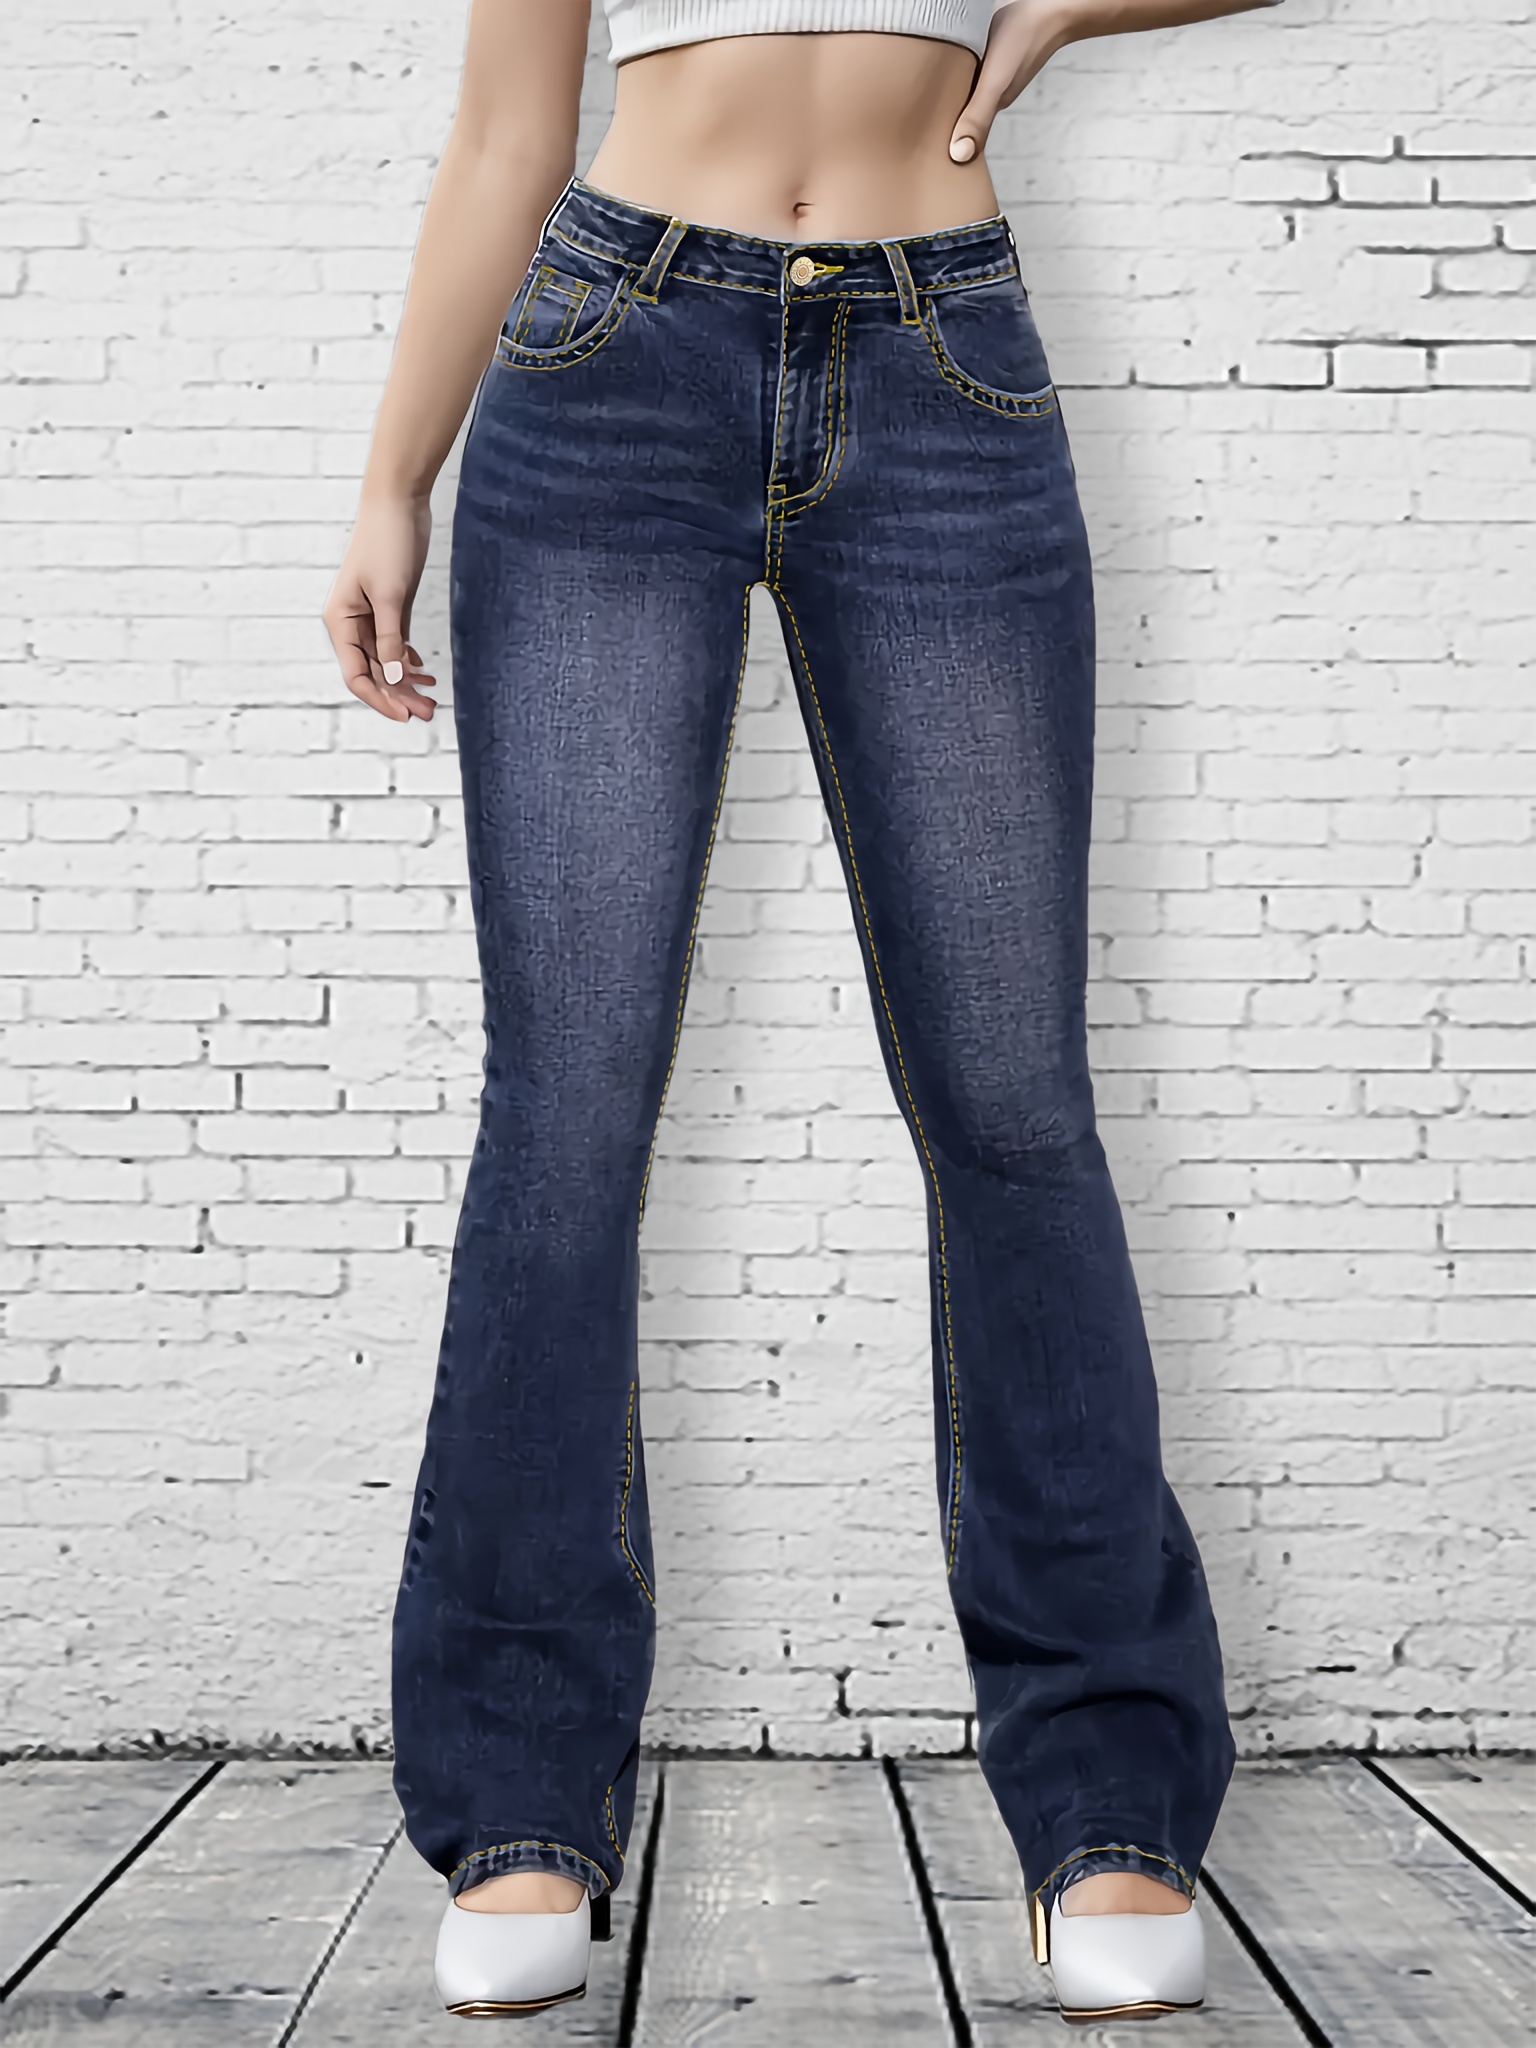  XIALON Jeans para mujer - Jeans ajustados de cintura